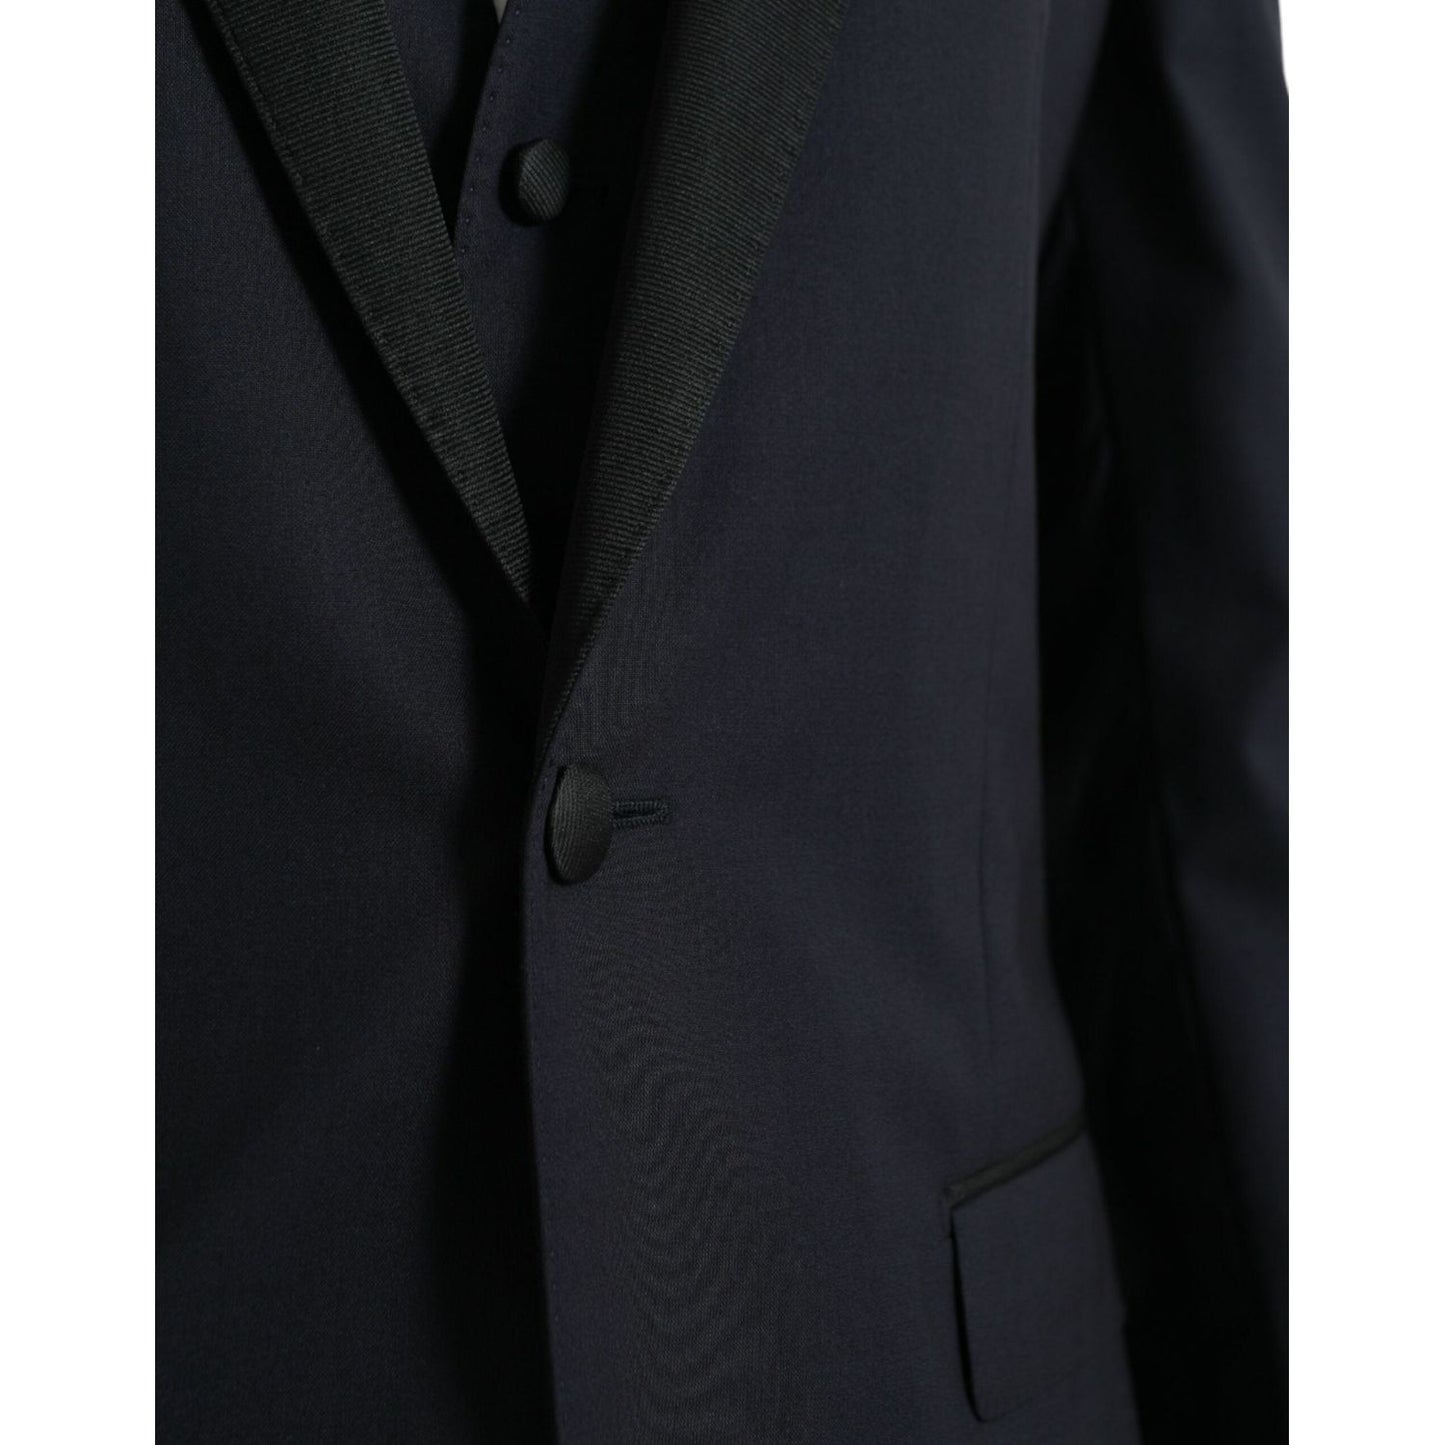 Dolce & Gabbana Dark Blue MARTINI Wool Formal 3 Piece Suit dark-blue-martini-wool-formal-3-piece-suit